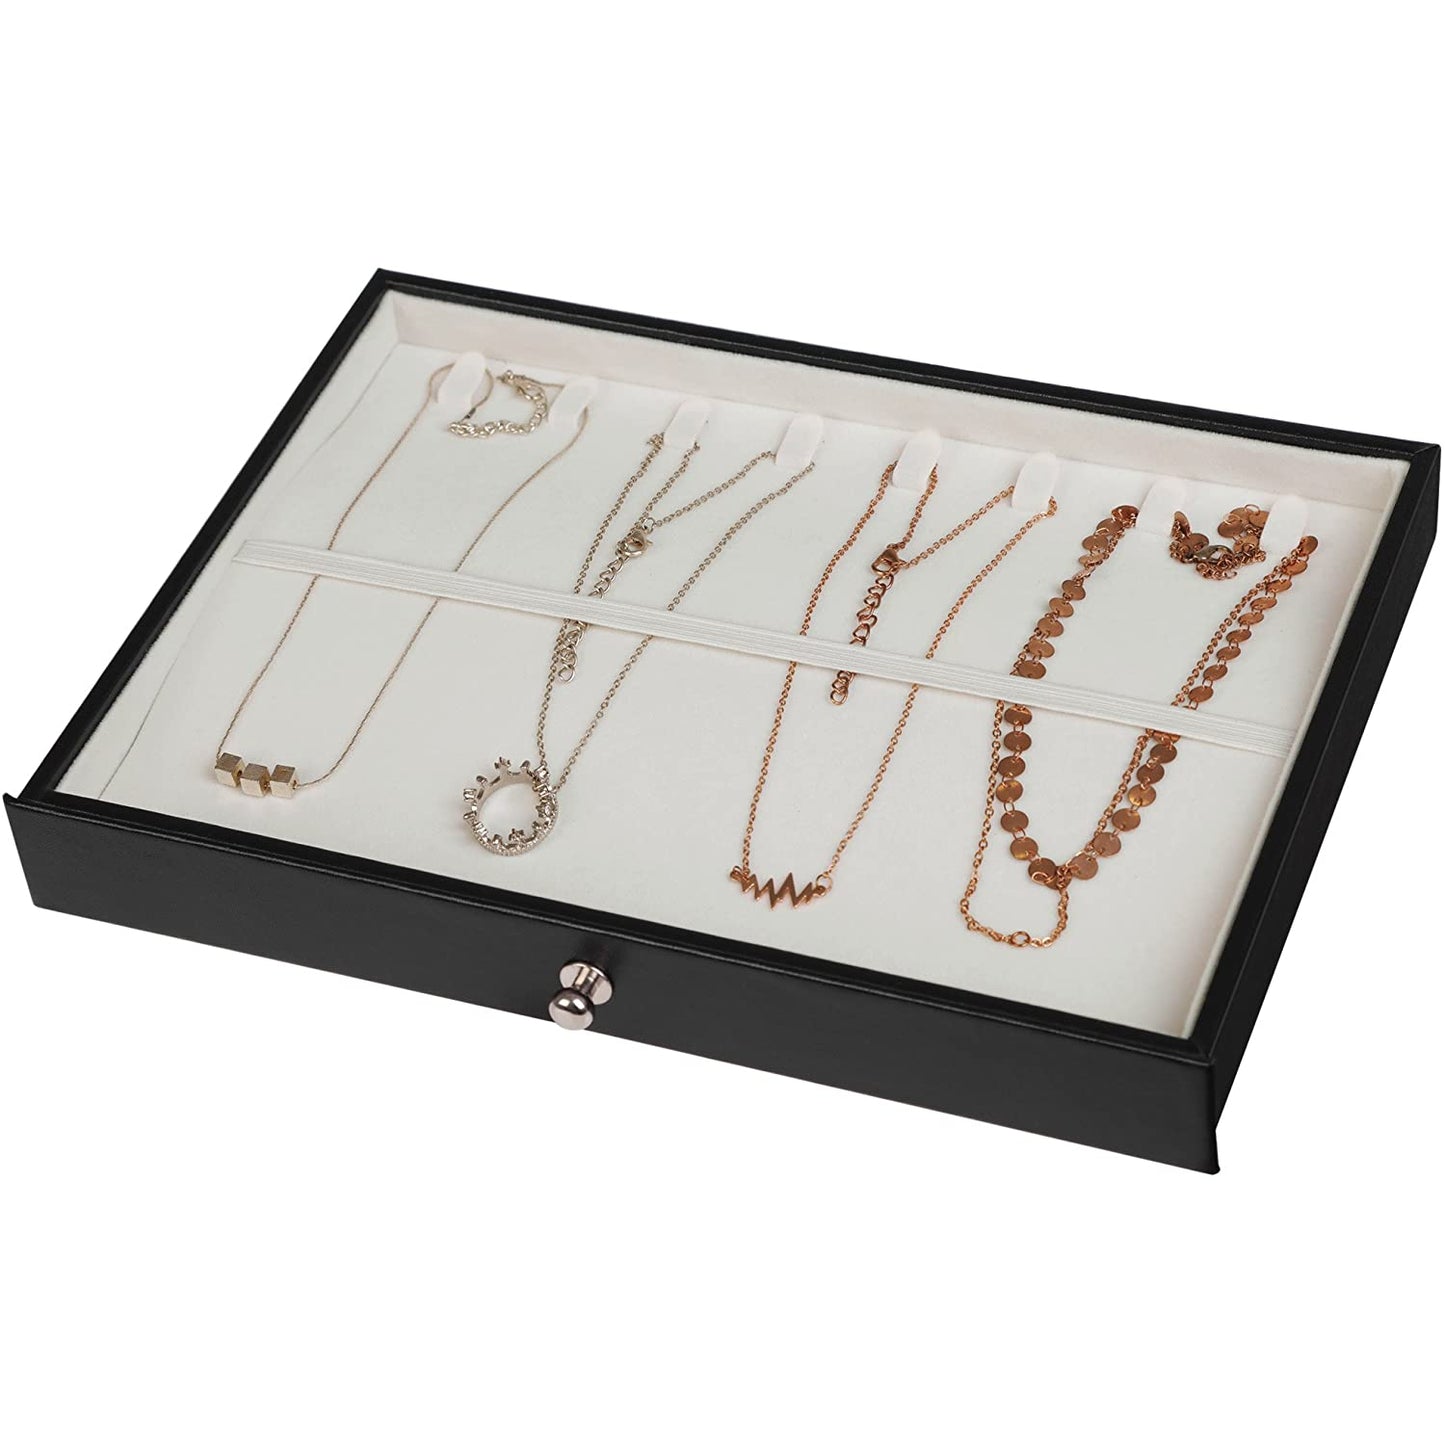 Boîte à bijoux de Nancy - XL - Boîte à bijoux - Boîte à bijoux - Rangement bijoux